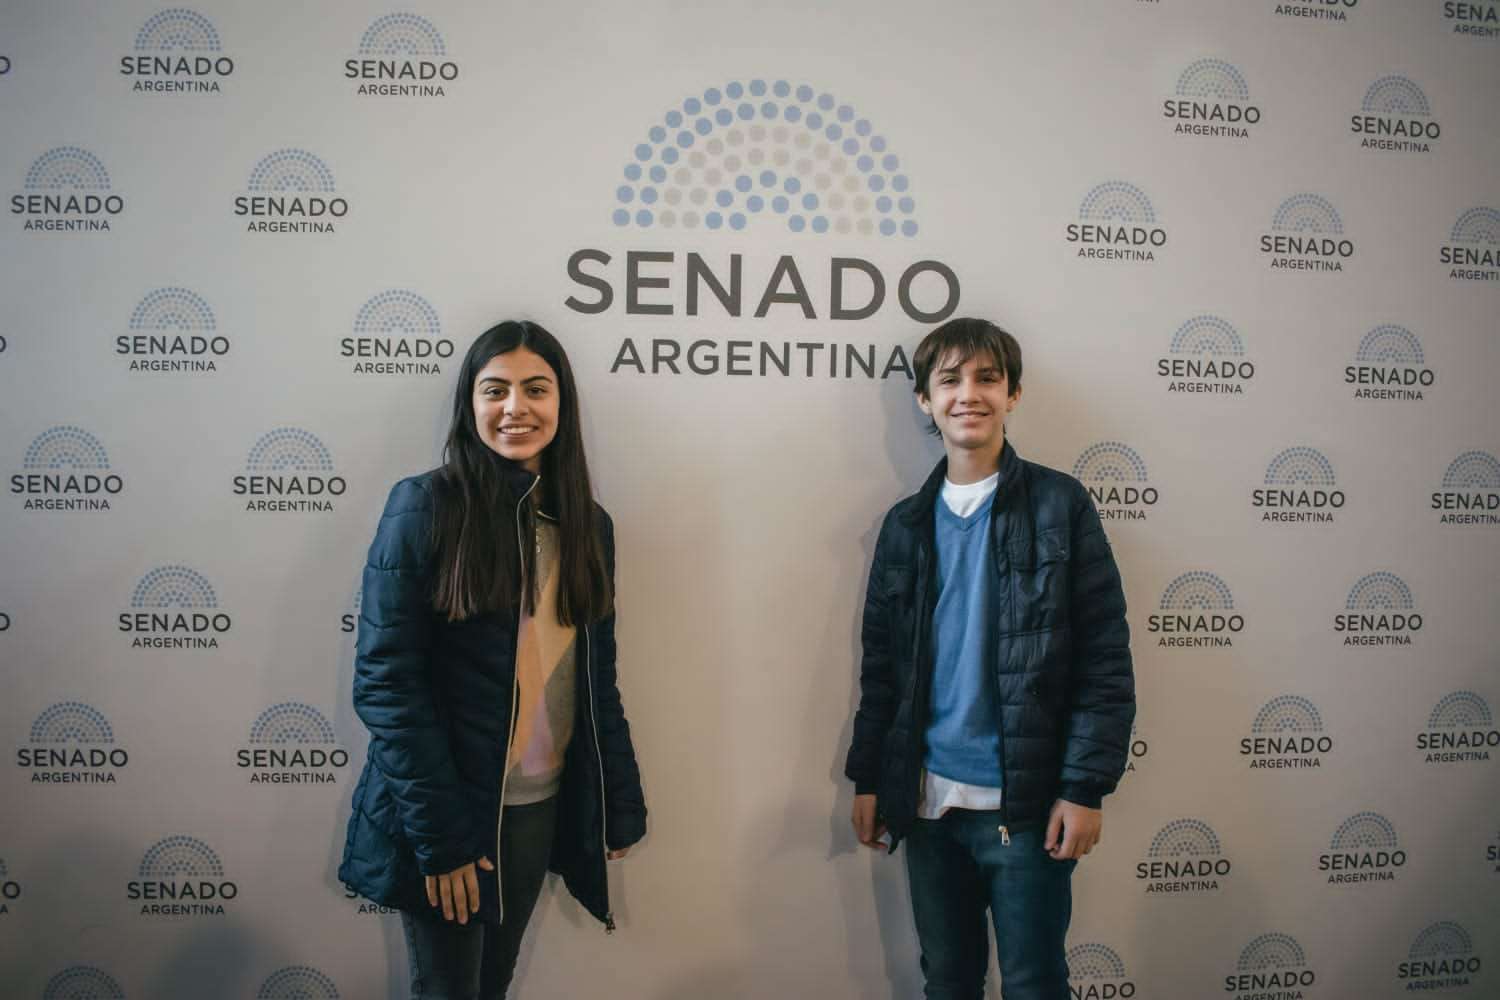 Los Senadores Juveniles locales se presentaron en Buenos Aires